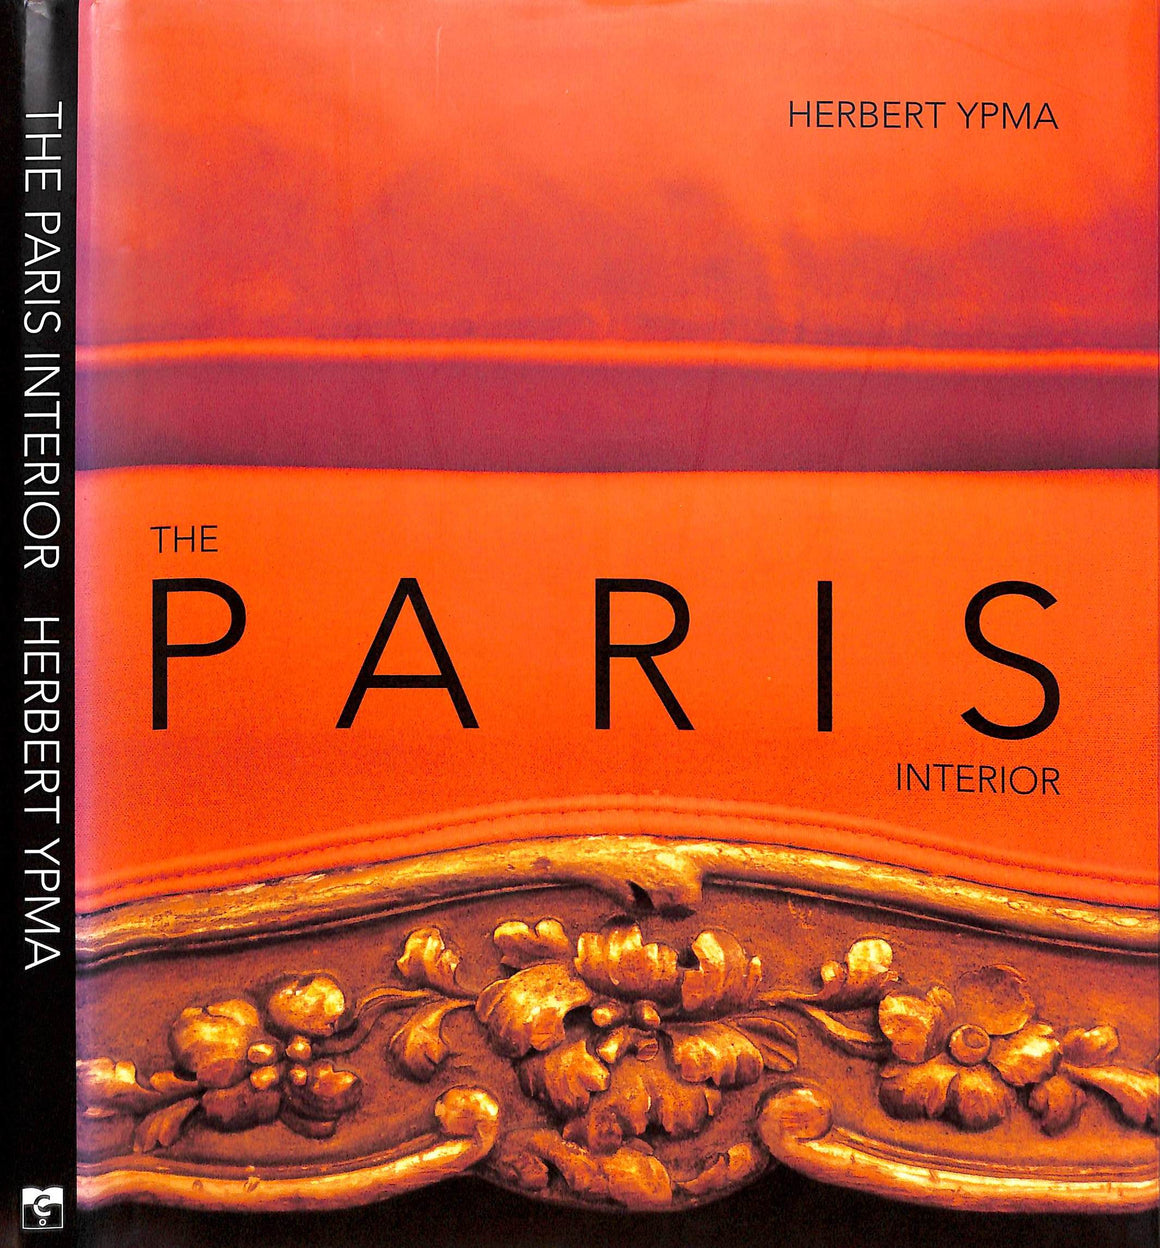 "The Paris Interior" 2001 YMPA, Herbert